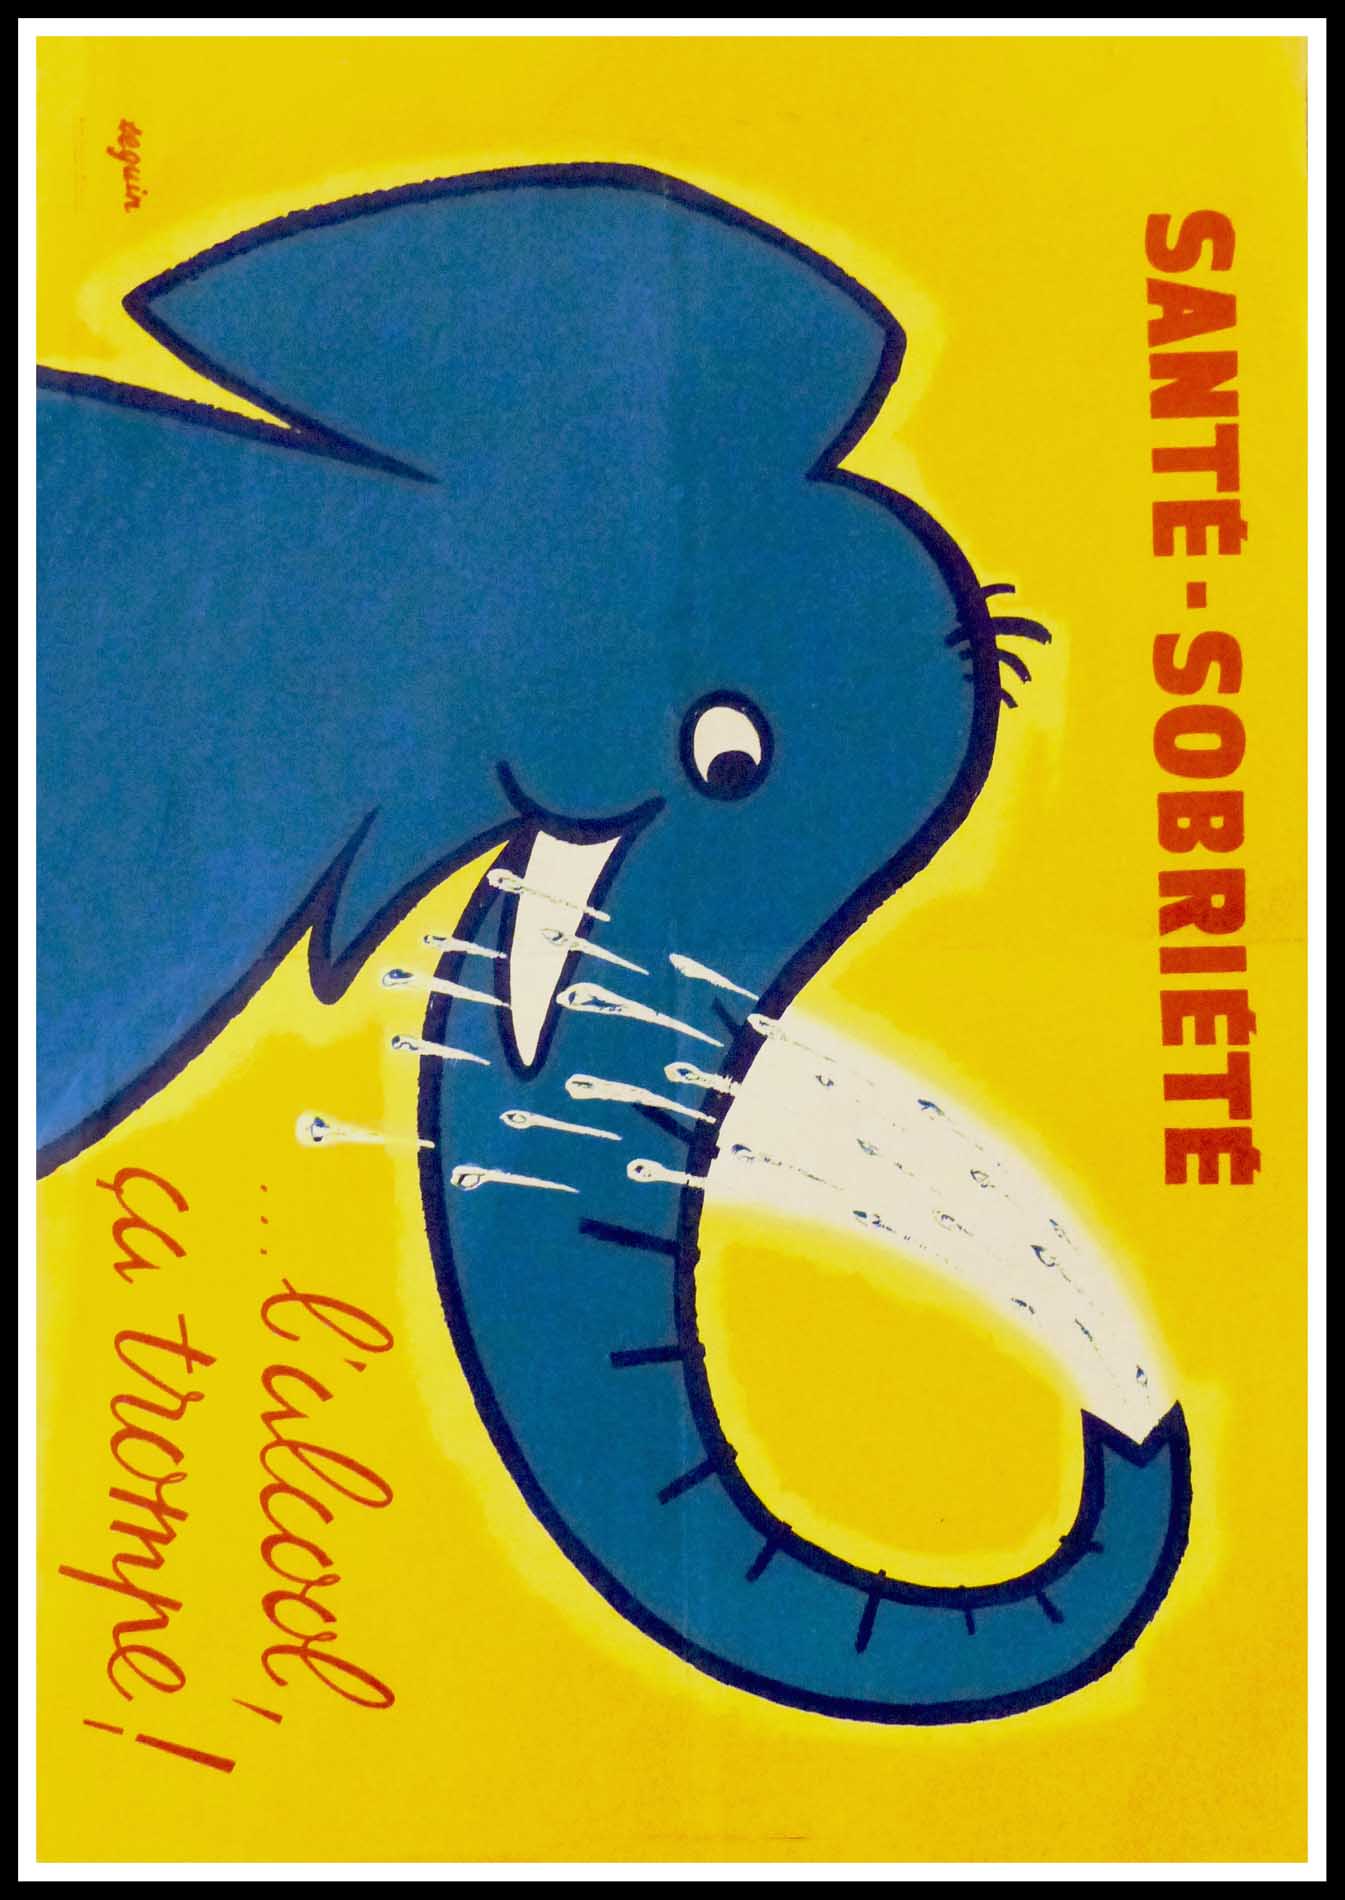 (alt="Original vintage poster Santé - Sobriété, L'alcool ça trompe!, 1958 realised by Séguin and printed by Karcher")